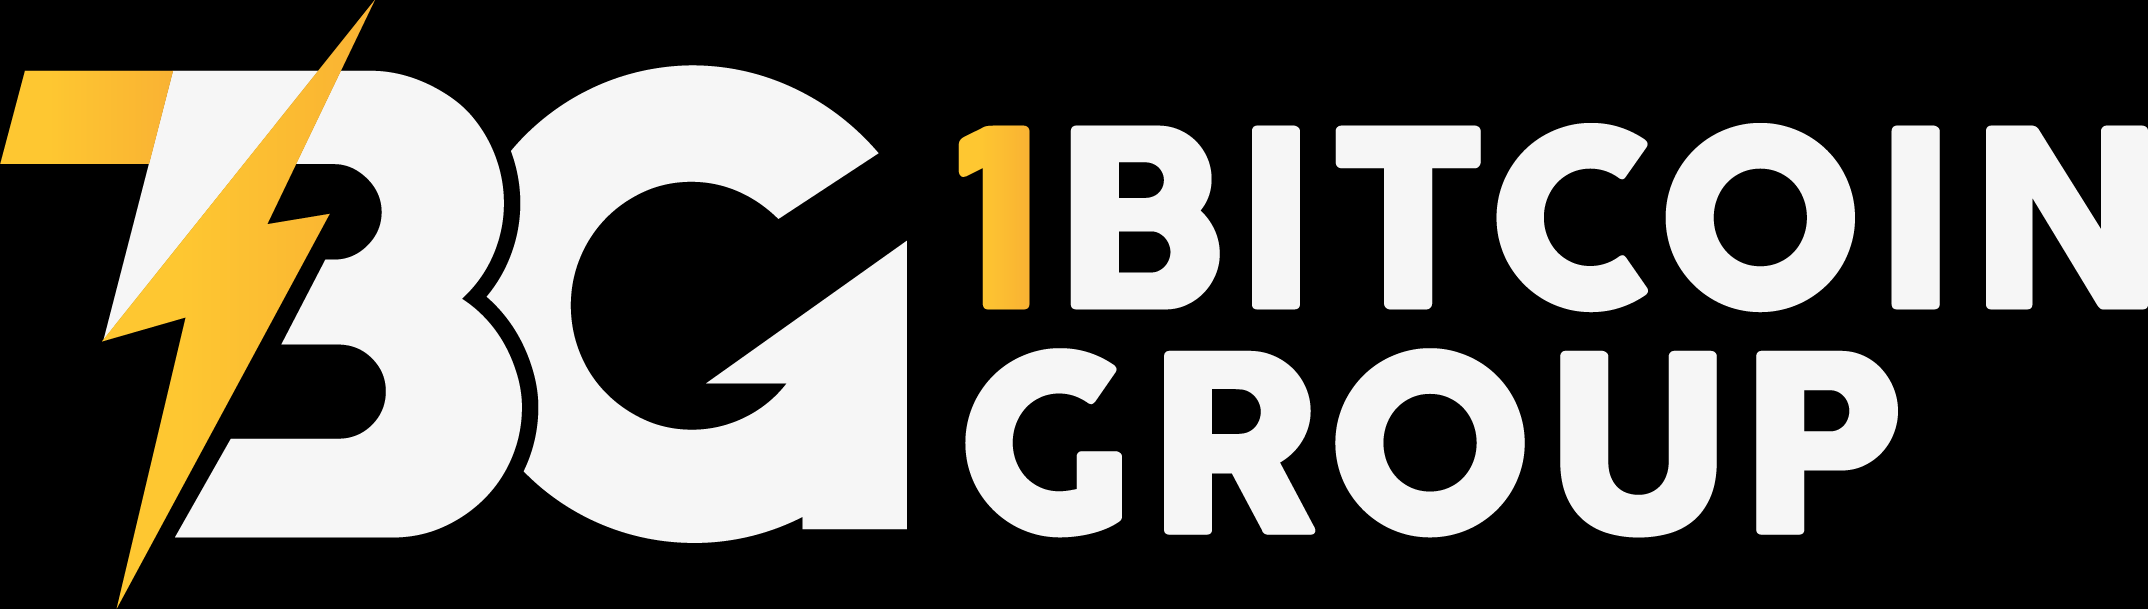 1bitcoin group logo